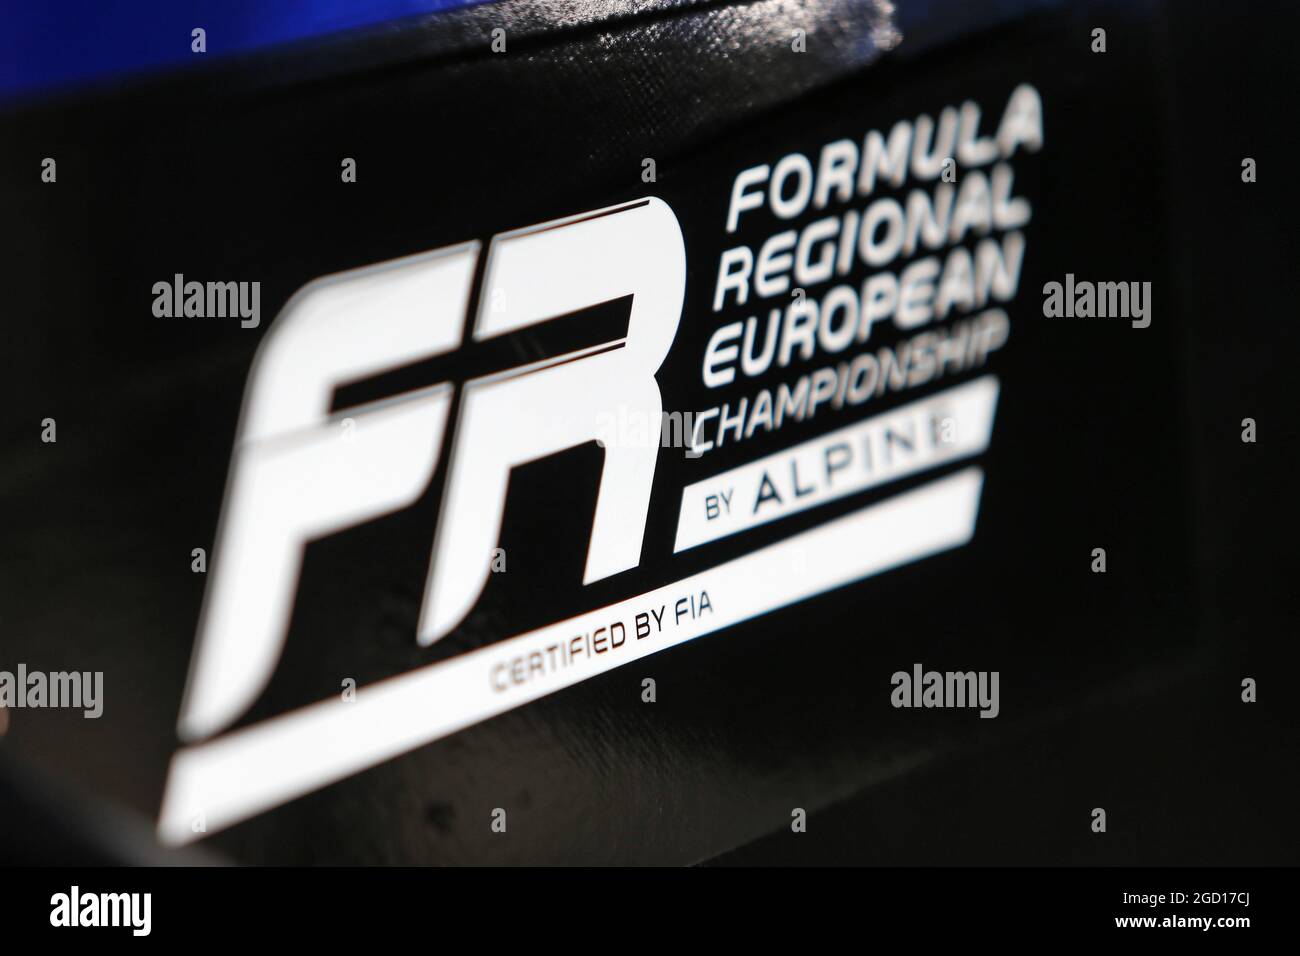 Die von der FIA zertifizierte Formel-Regional-Europameisterschaft von Alpine wird vorgestellt. Großer Preis der Emilia Romagna, Samstag, 31. Oktober 2020. Imola, Italien. Stockfoto